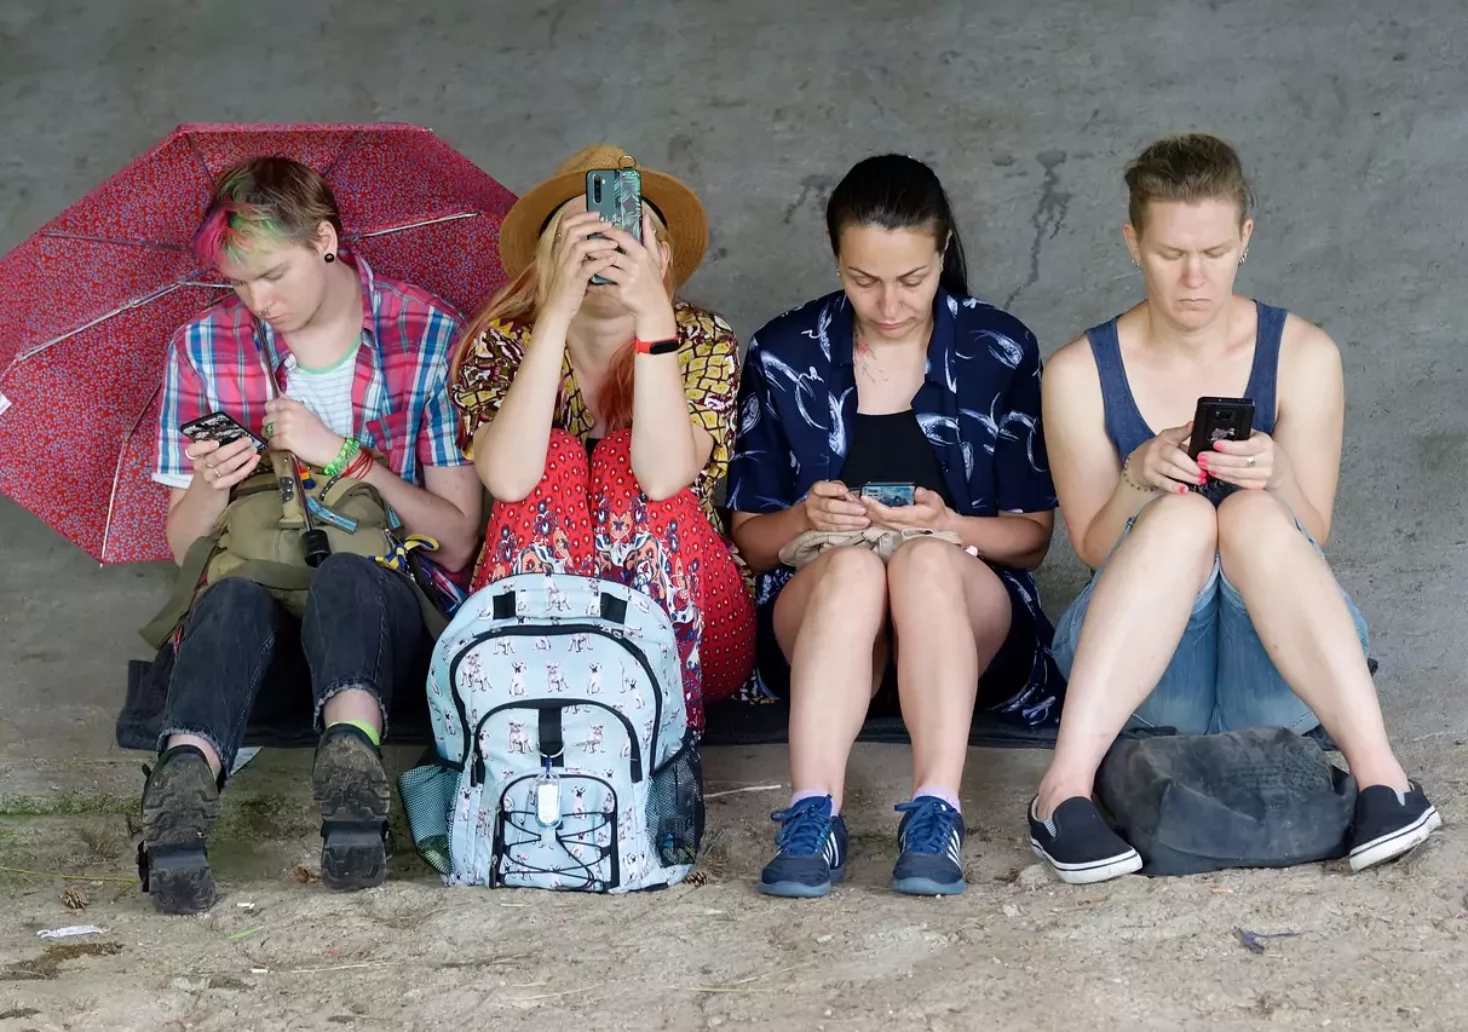 Ein Bild auf 5min.at zeigt mehrere Personen mit ihrem Smartphone in der Hand